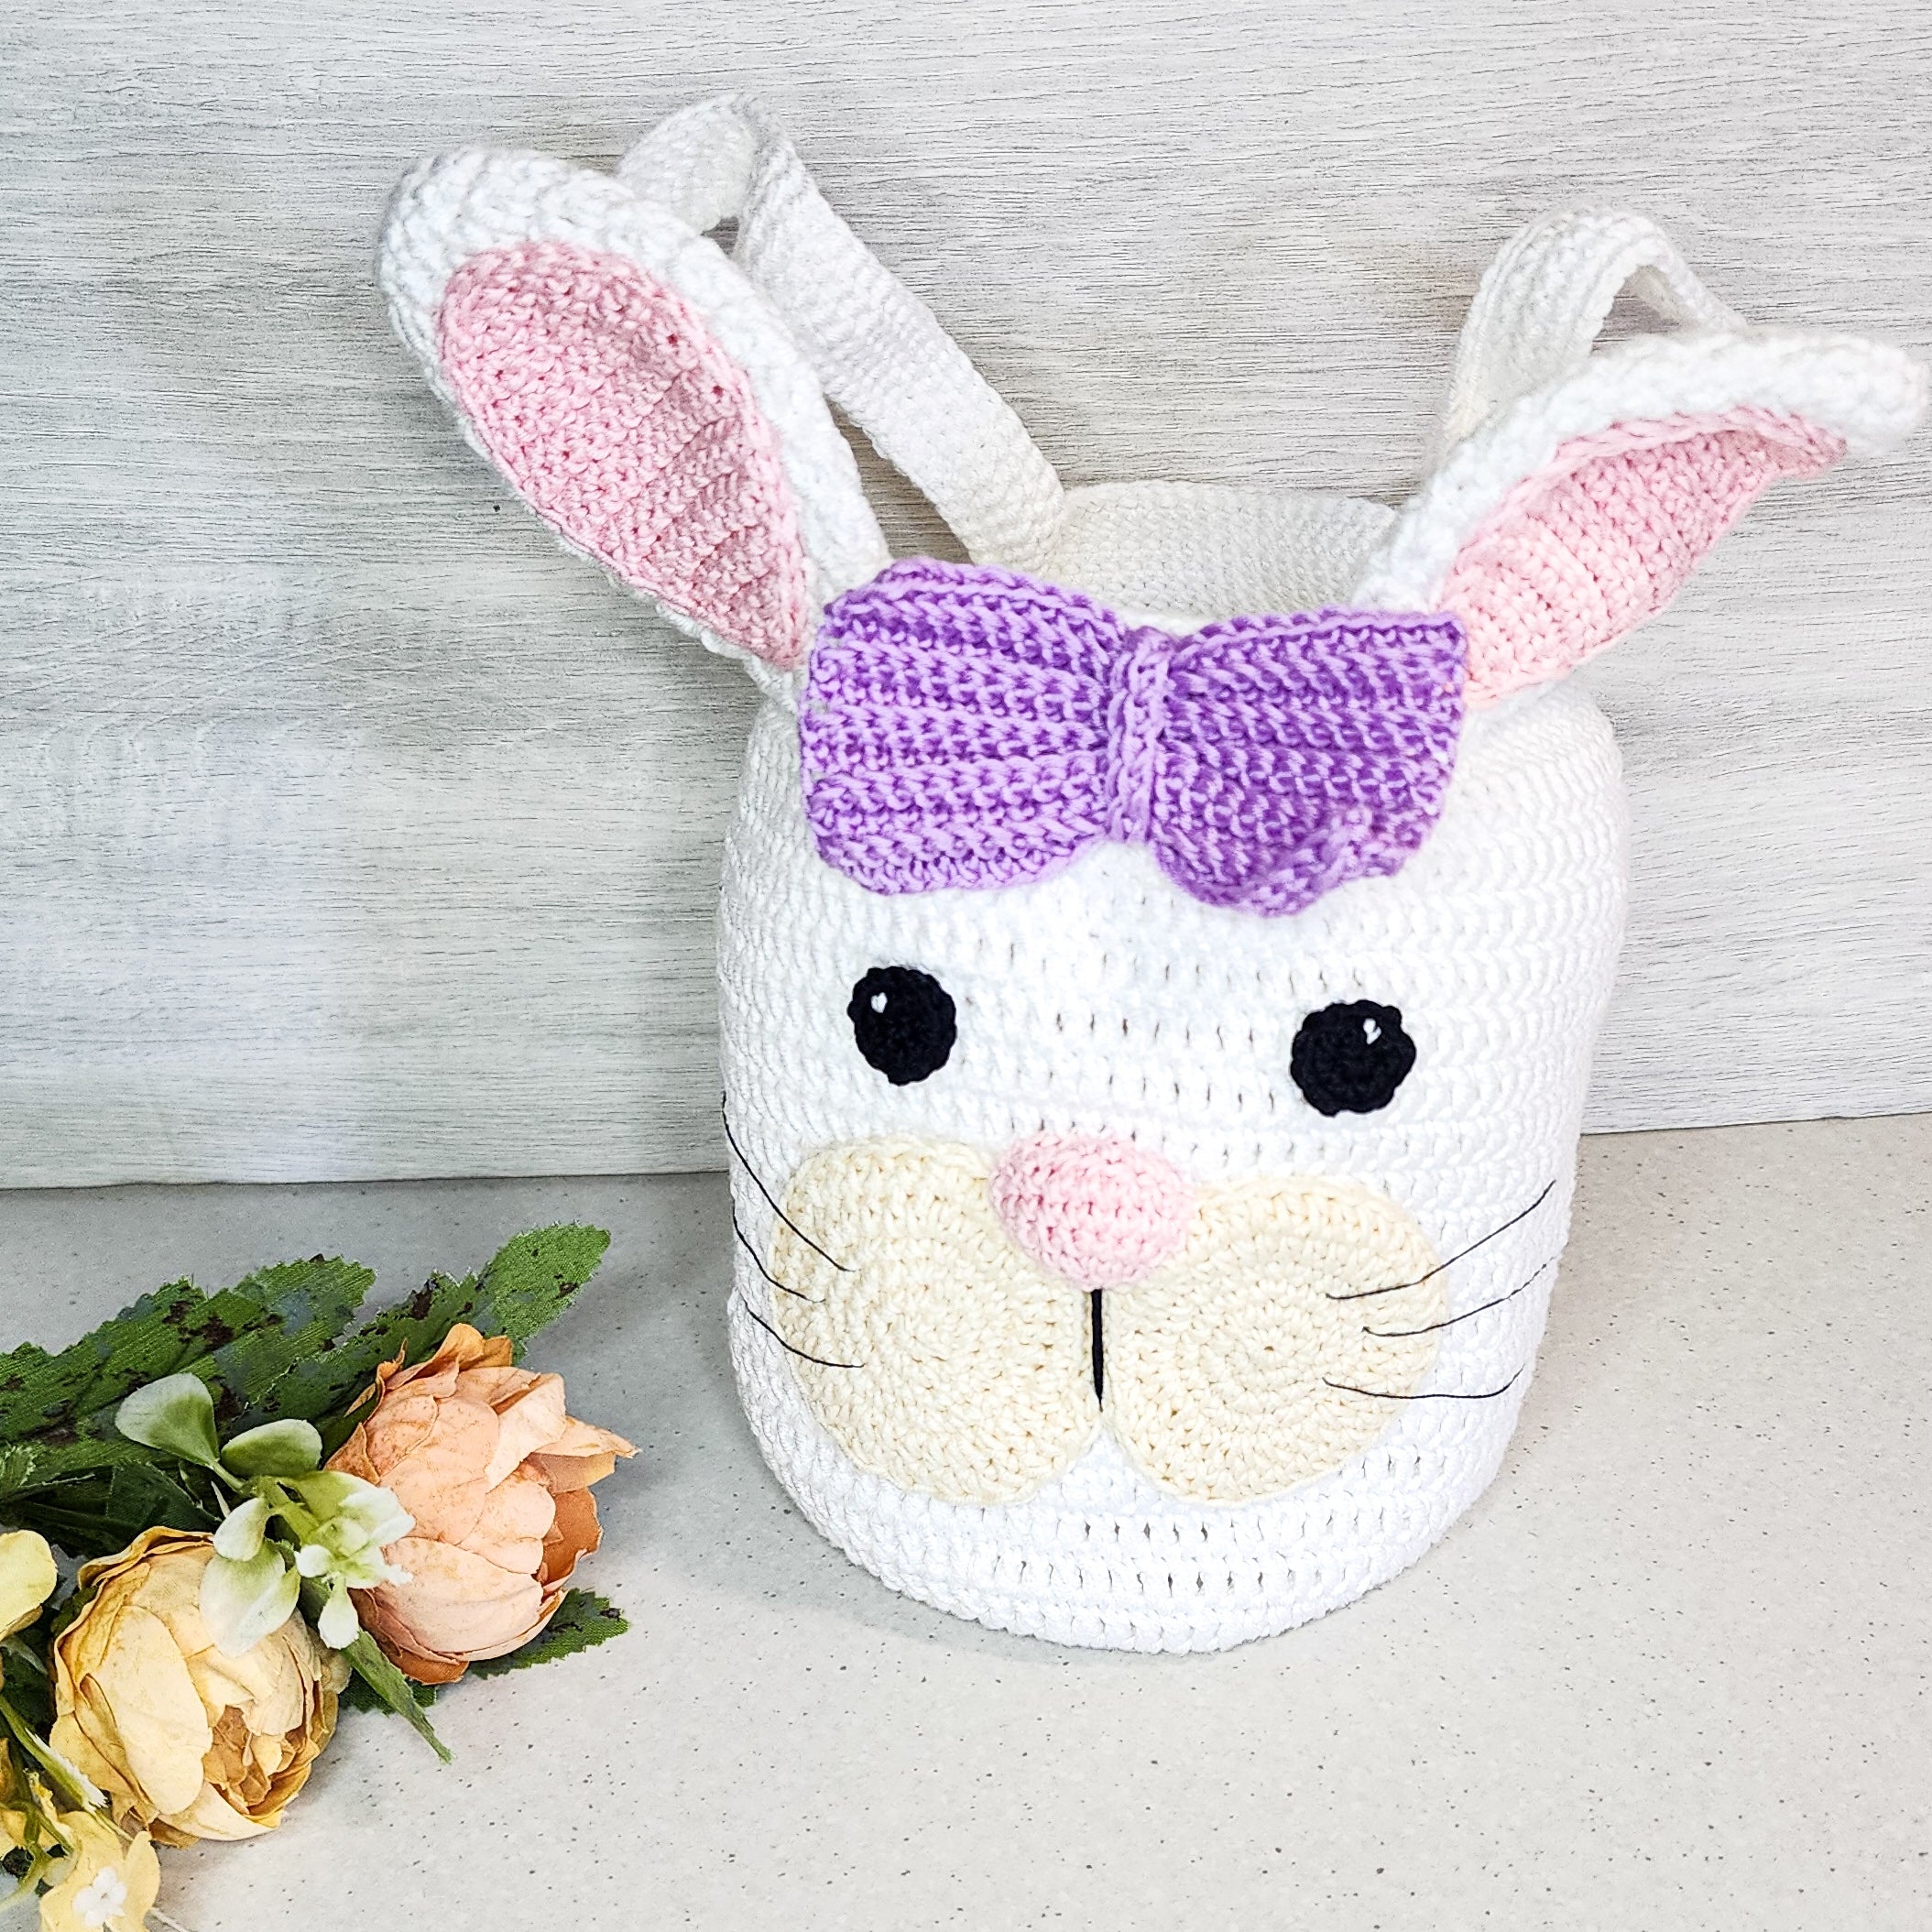 Girl Easter Bunny Bag